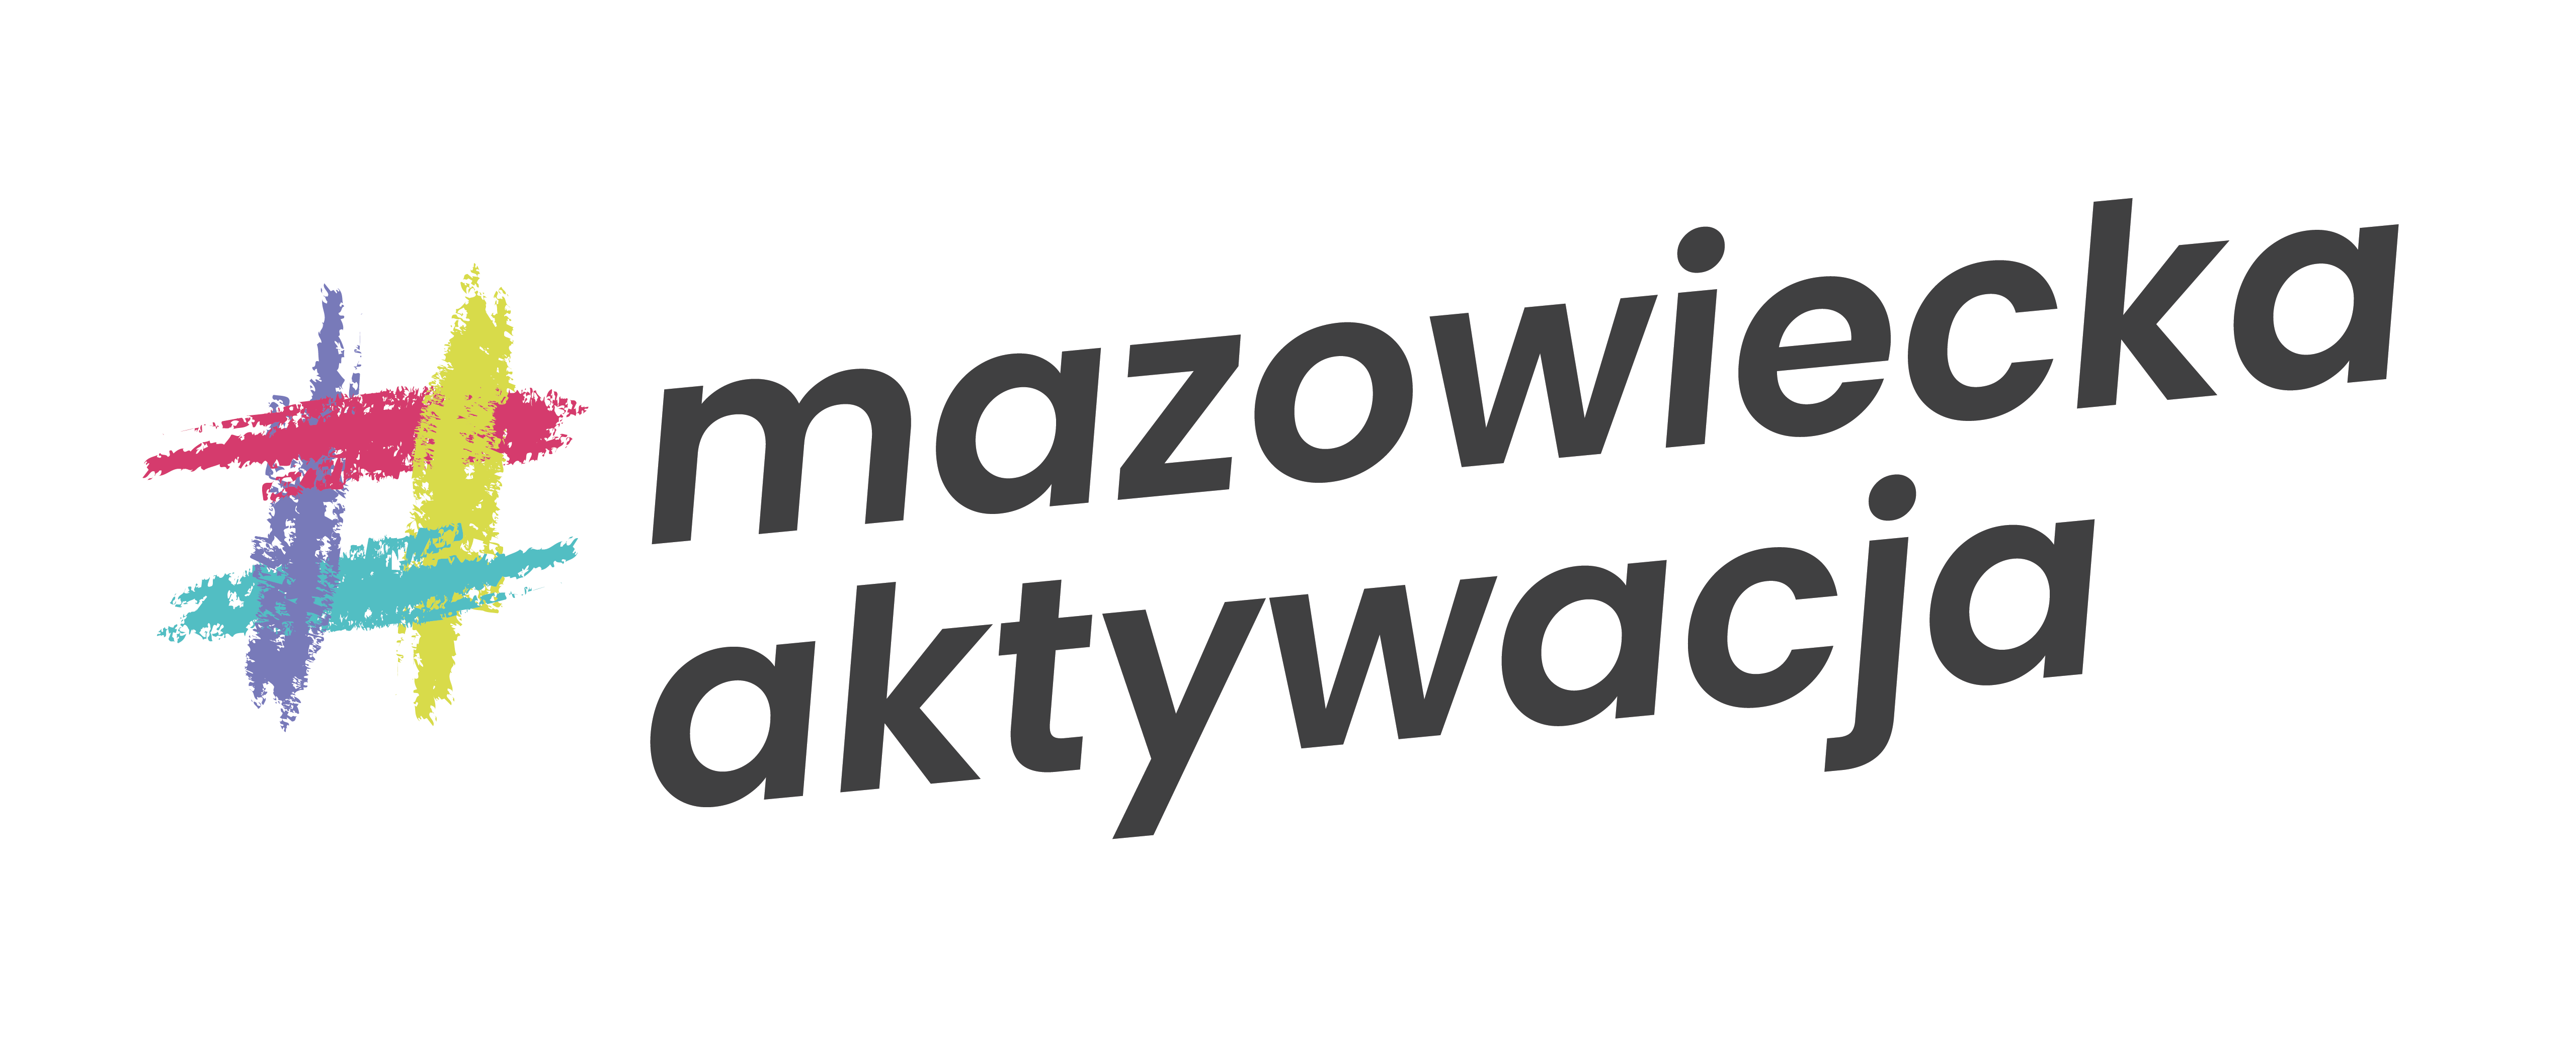 Logo konkursu "Mazowiecka Aktywacja"